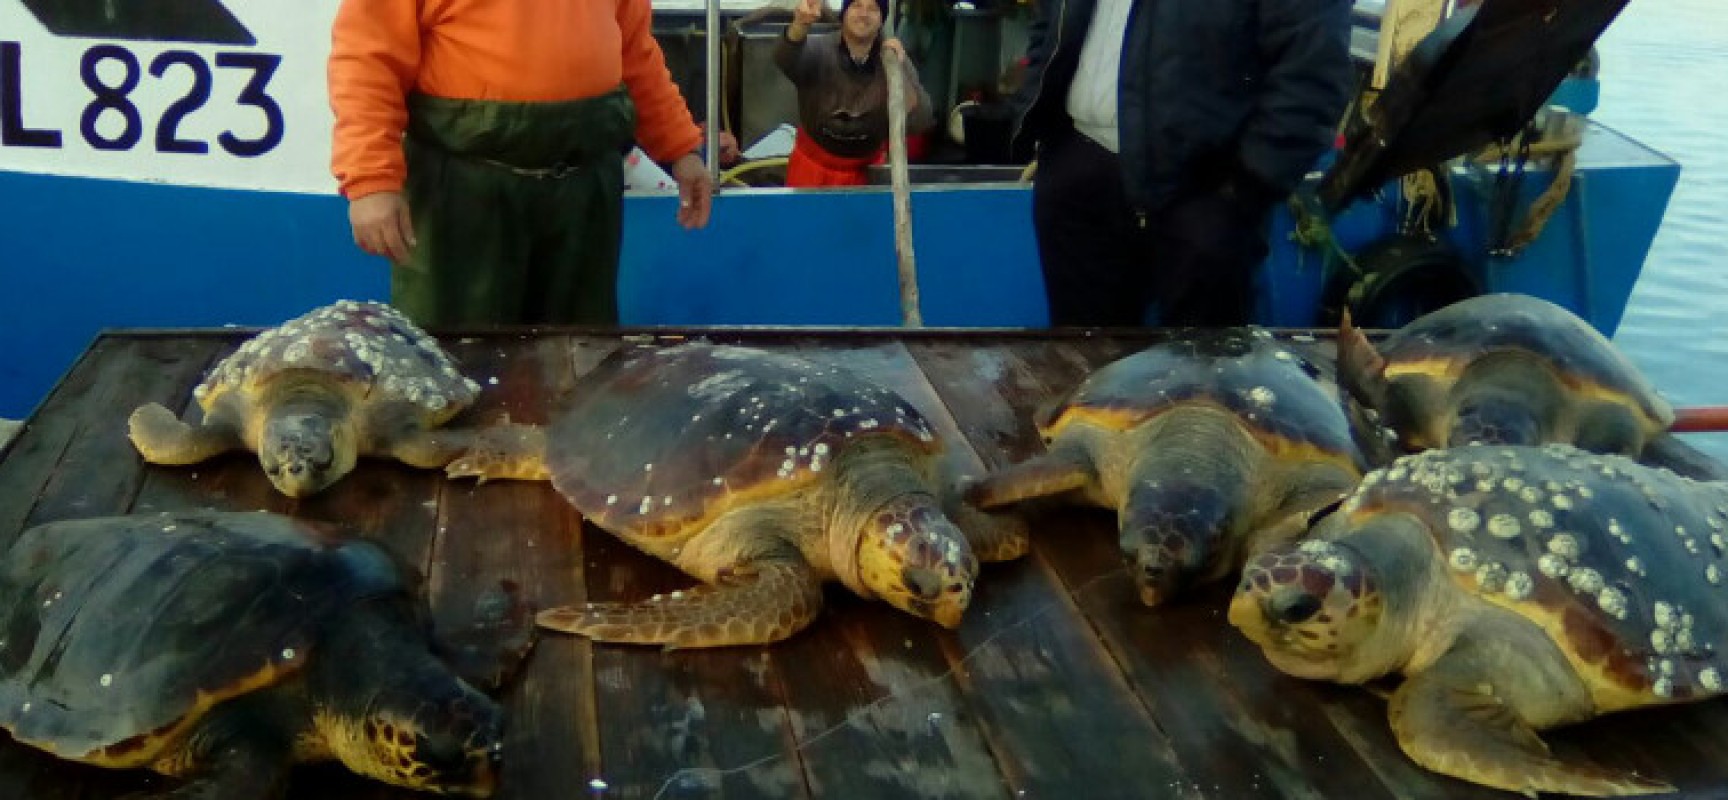 Chiusura da record per il centro di recupero, oltre 400 le tartarughe salvate nel 2016